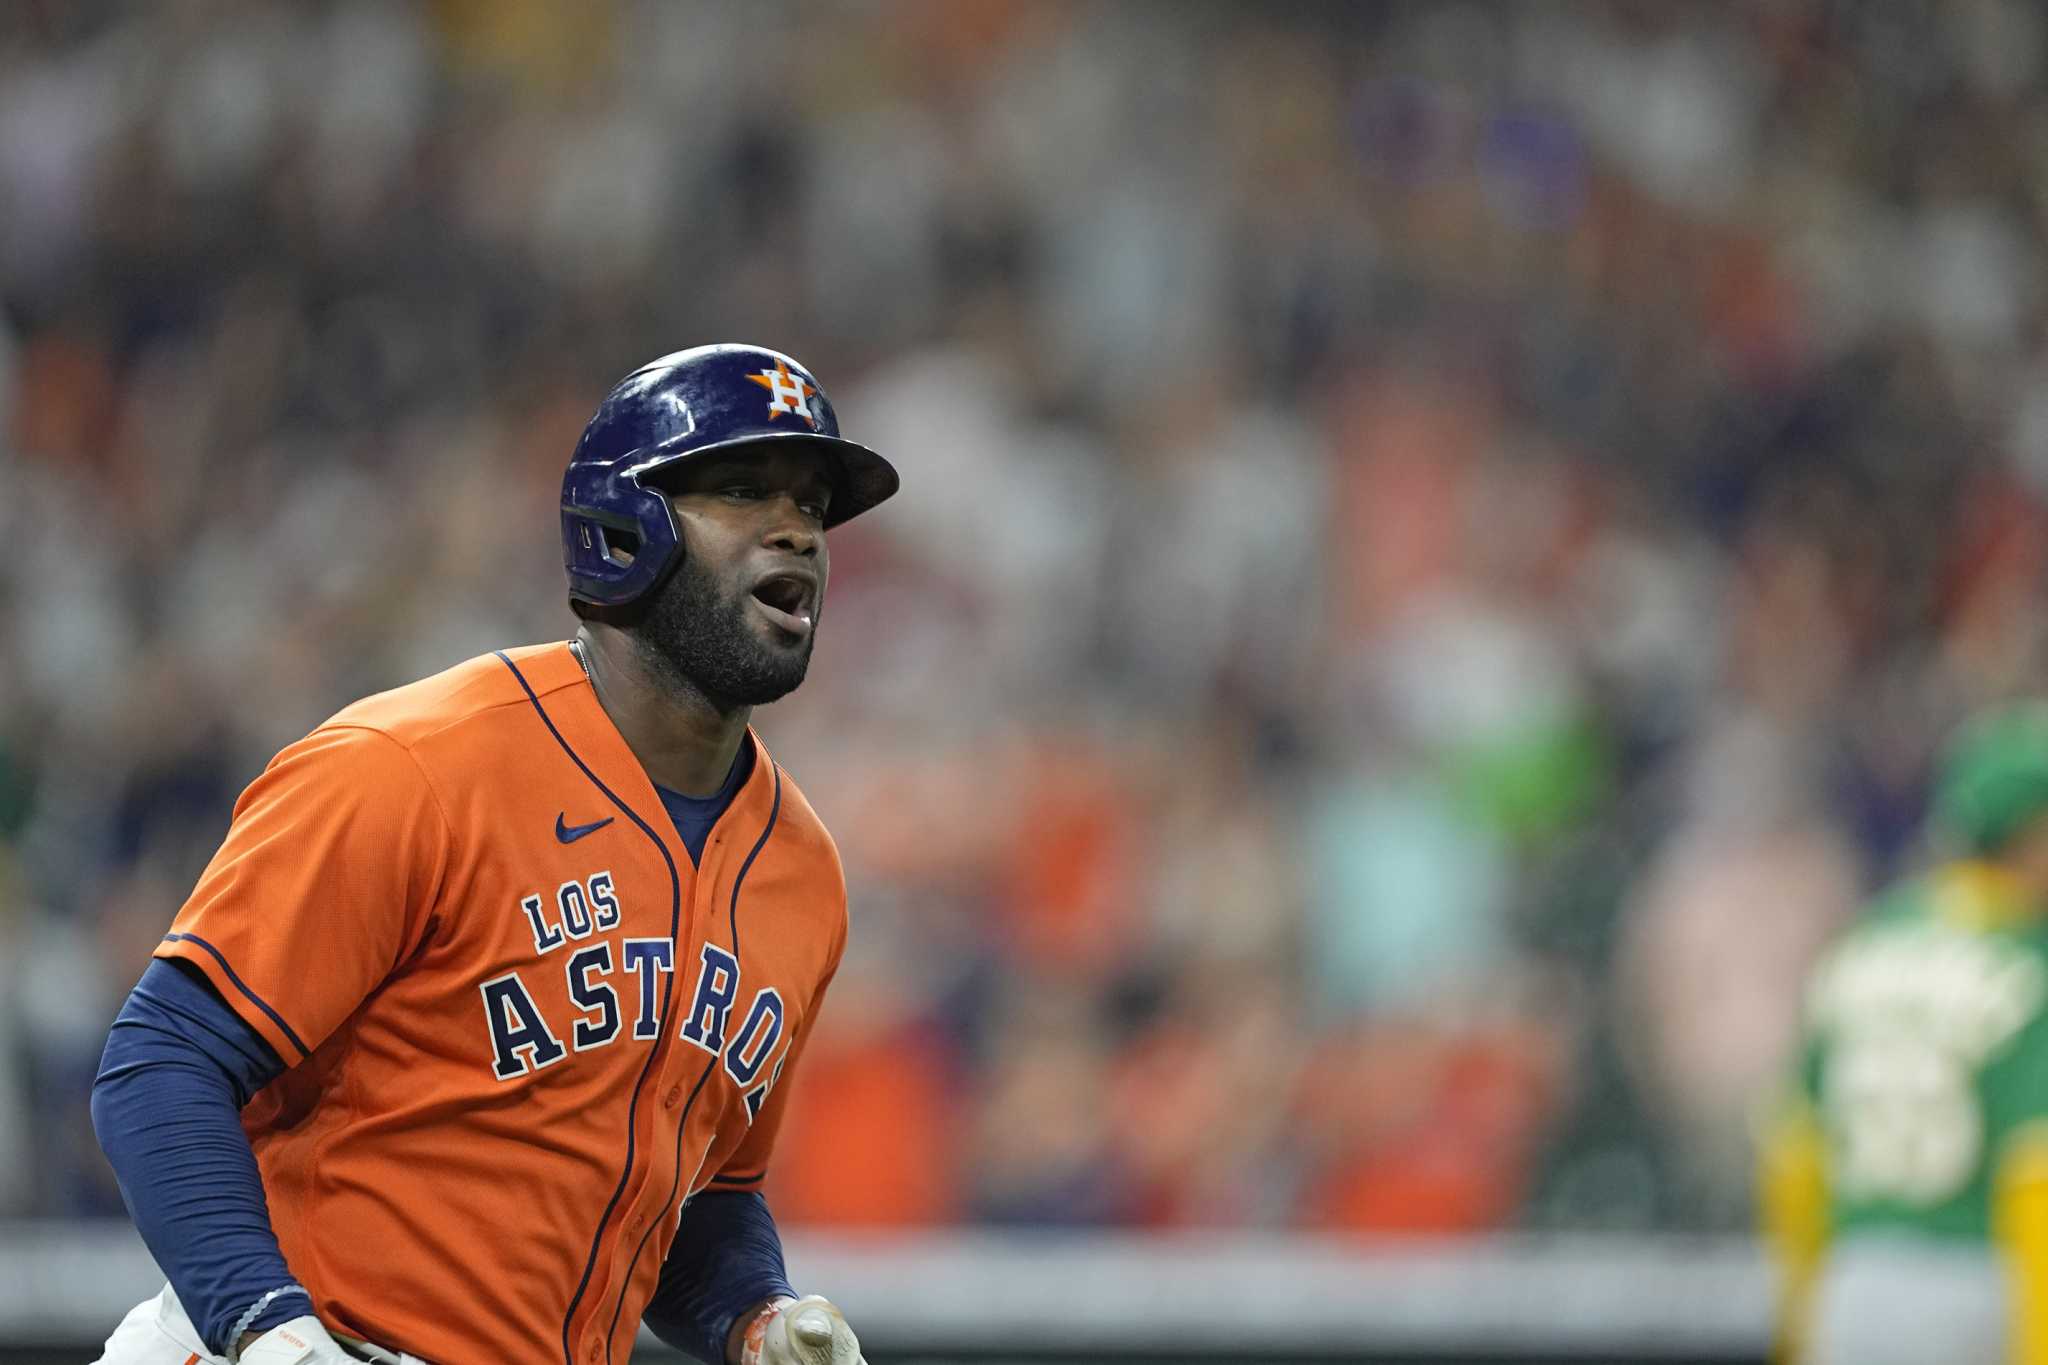 Houston Astros: Yordan Alvarez's postseason tear continues